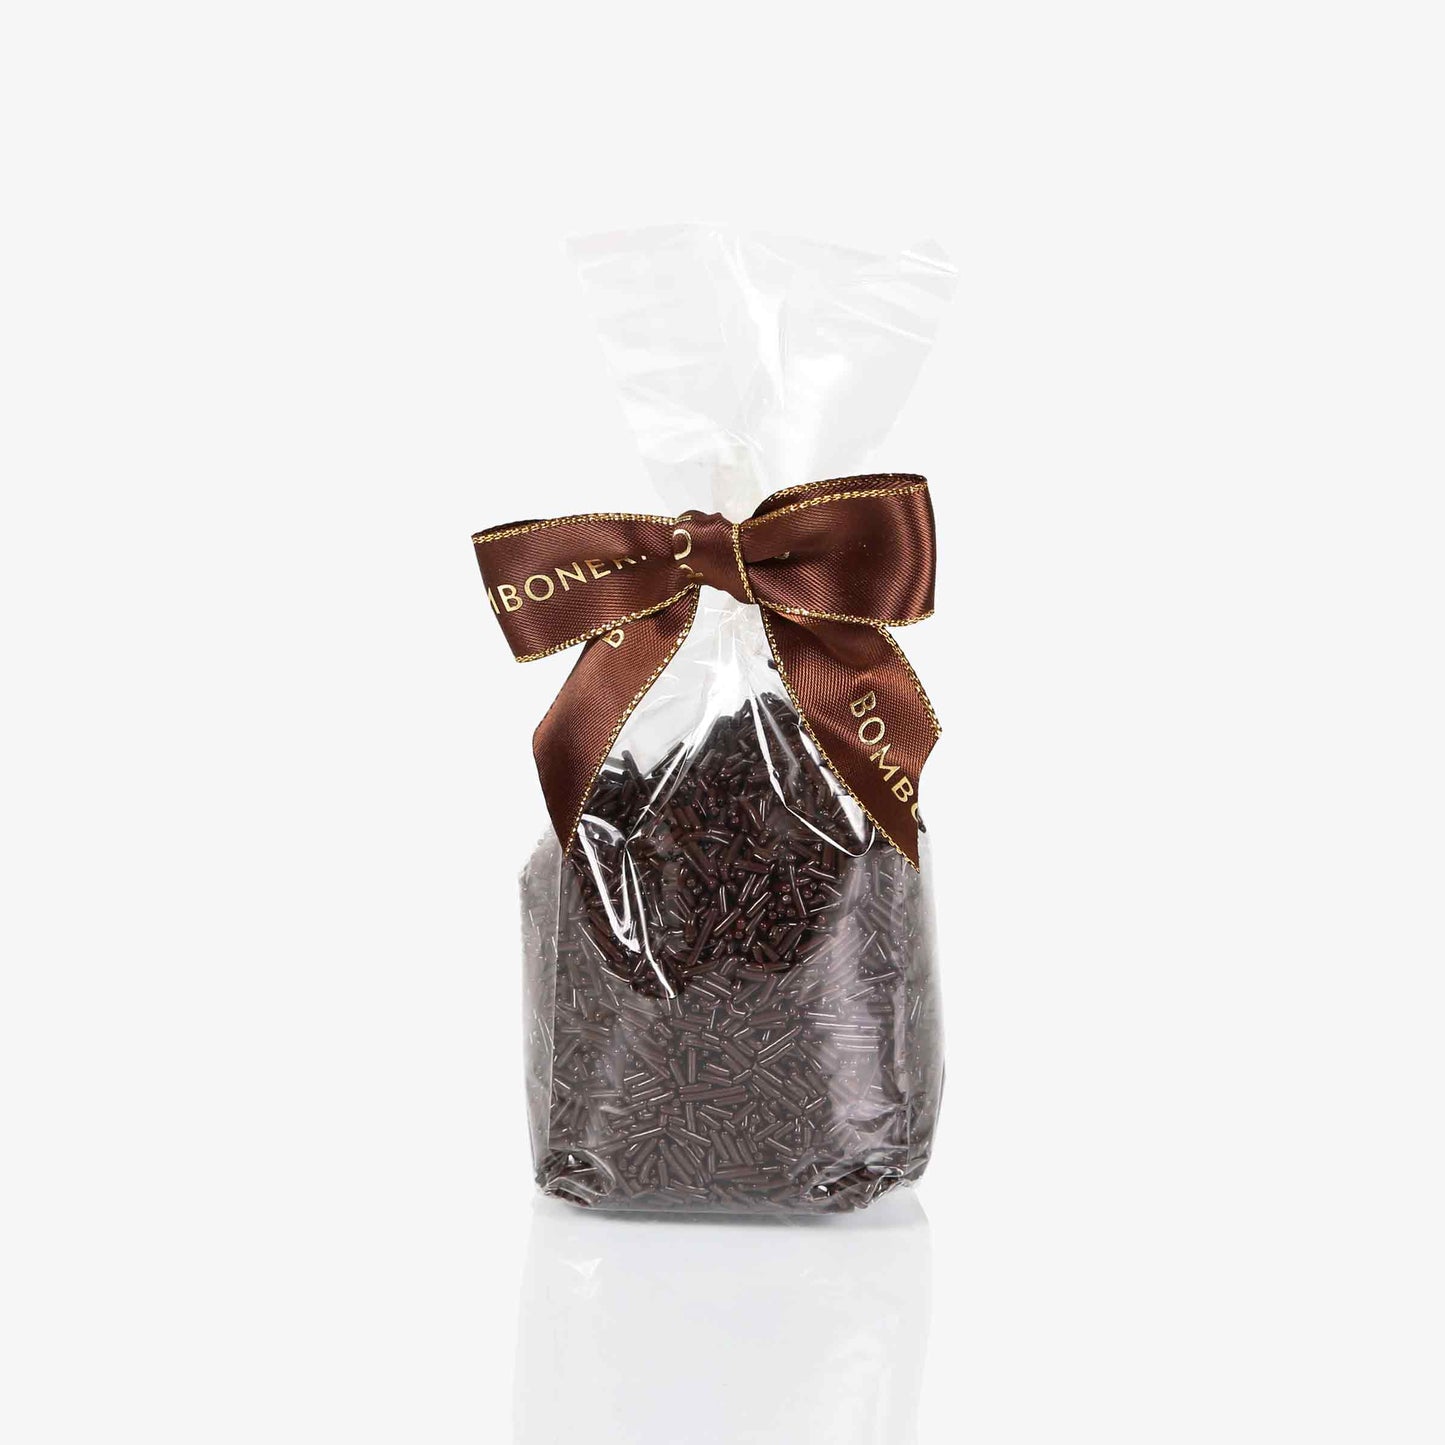  Fideos de chocolate - Bolsa 150g